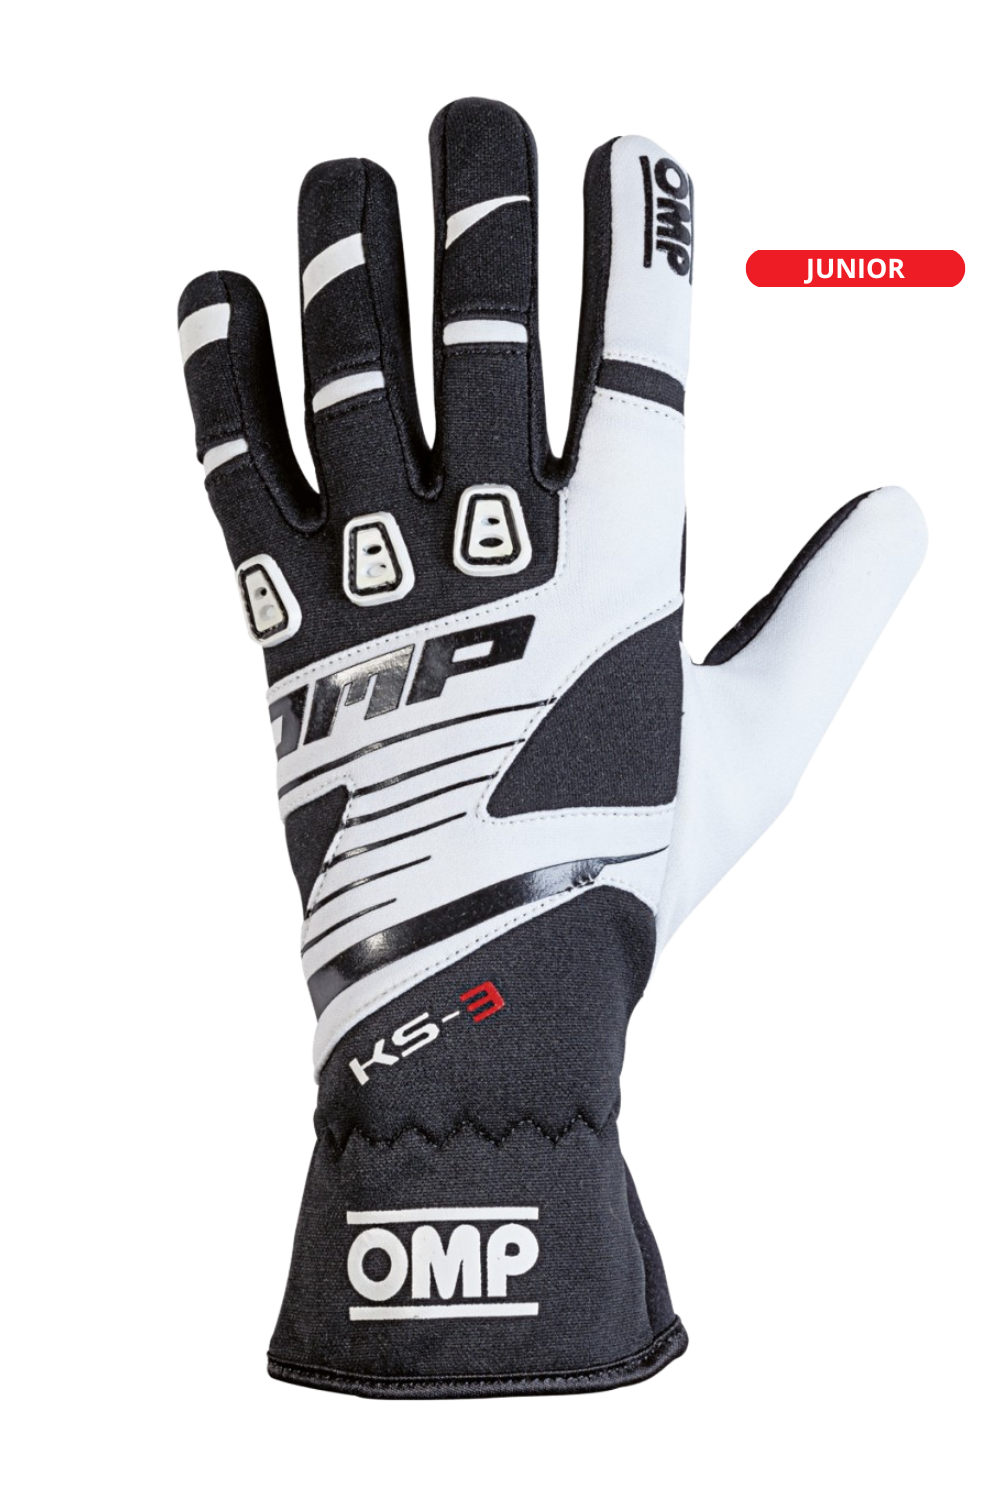 OMP KS-3 Gloves Black/White Junior